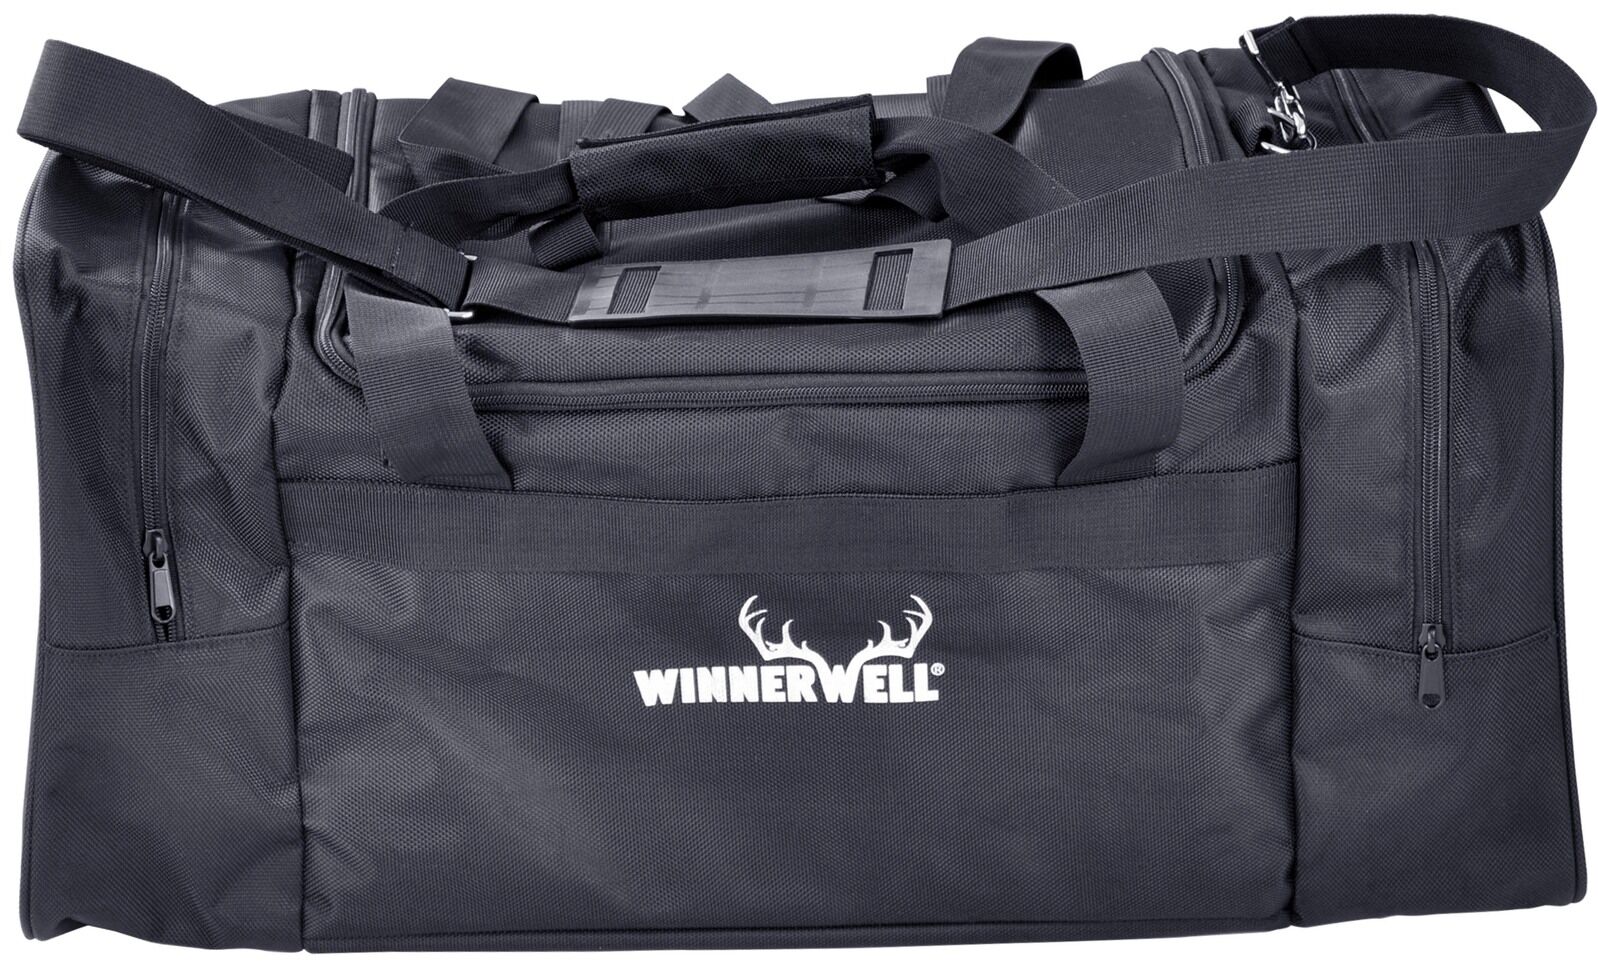 Winnerwell Transporttasche für Nomad oder Woodlander in Gr. M